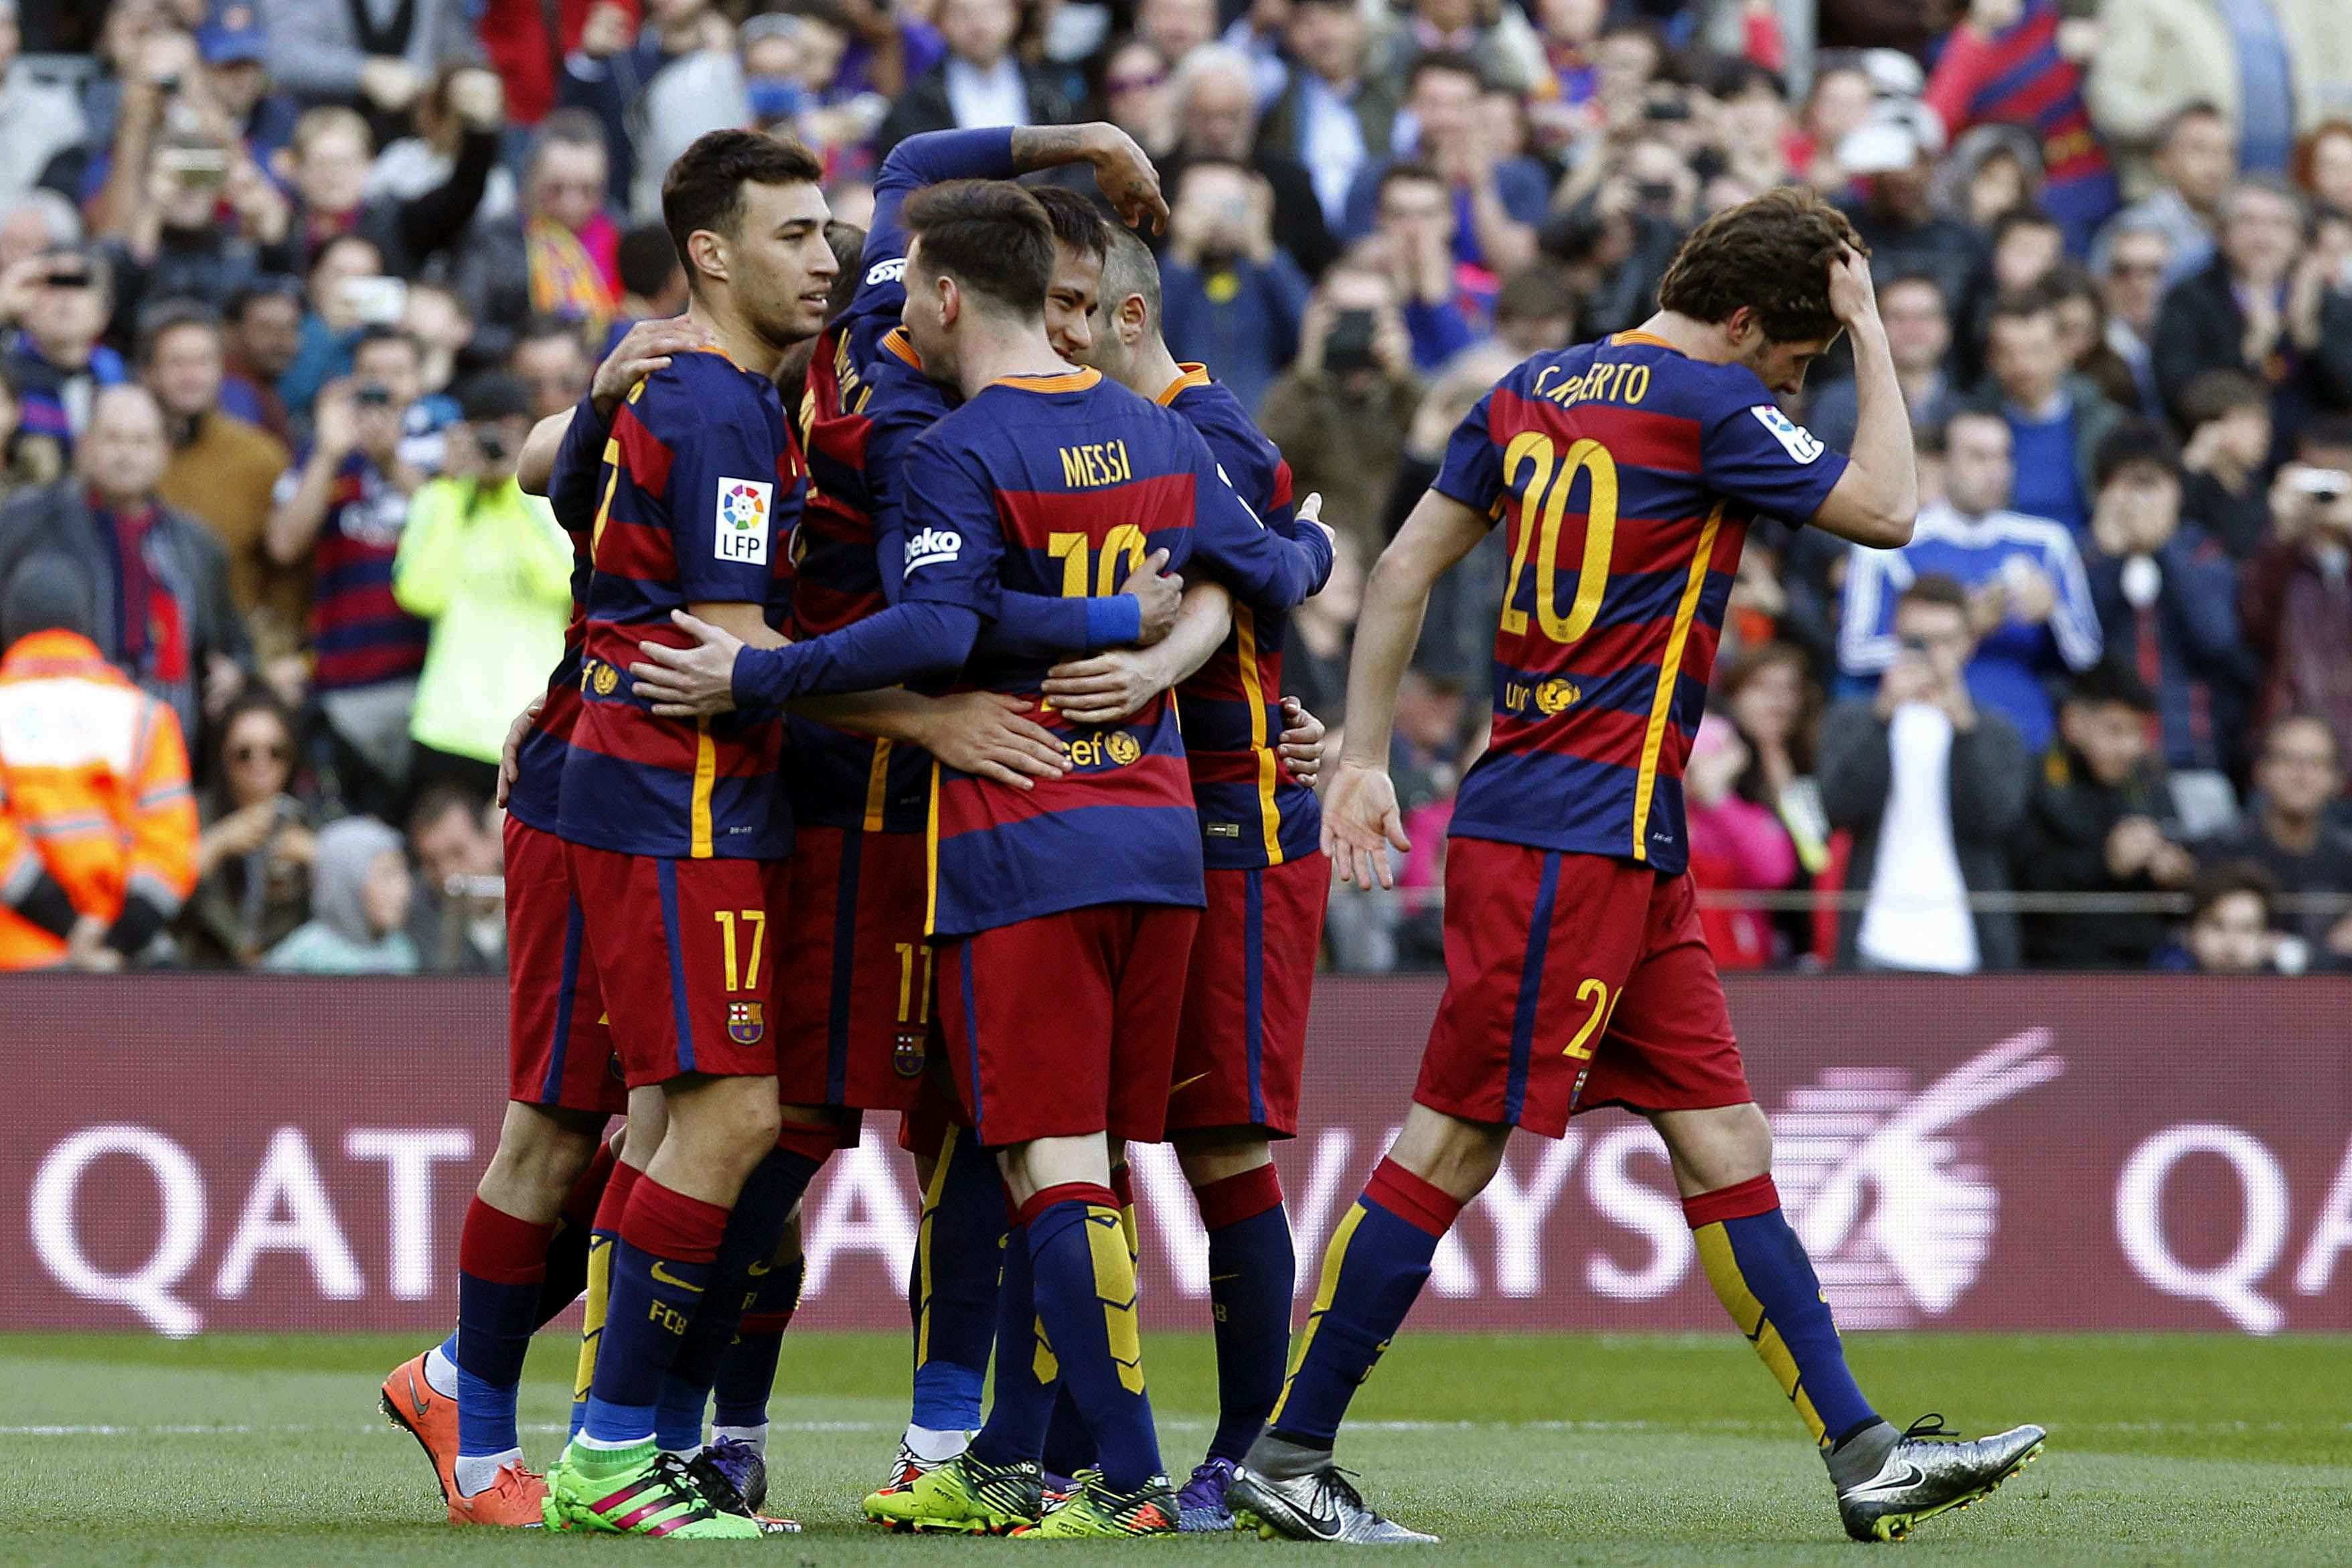 El Barça cautiva y devora rivales